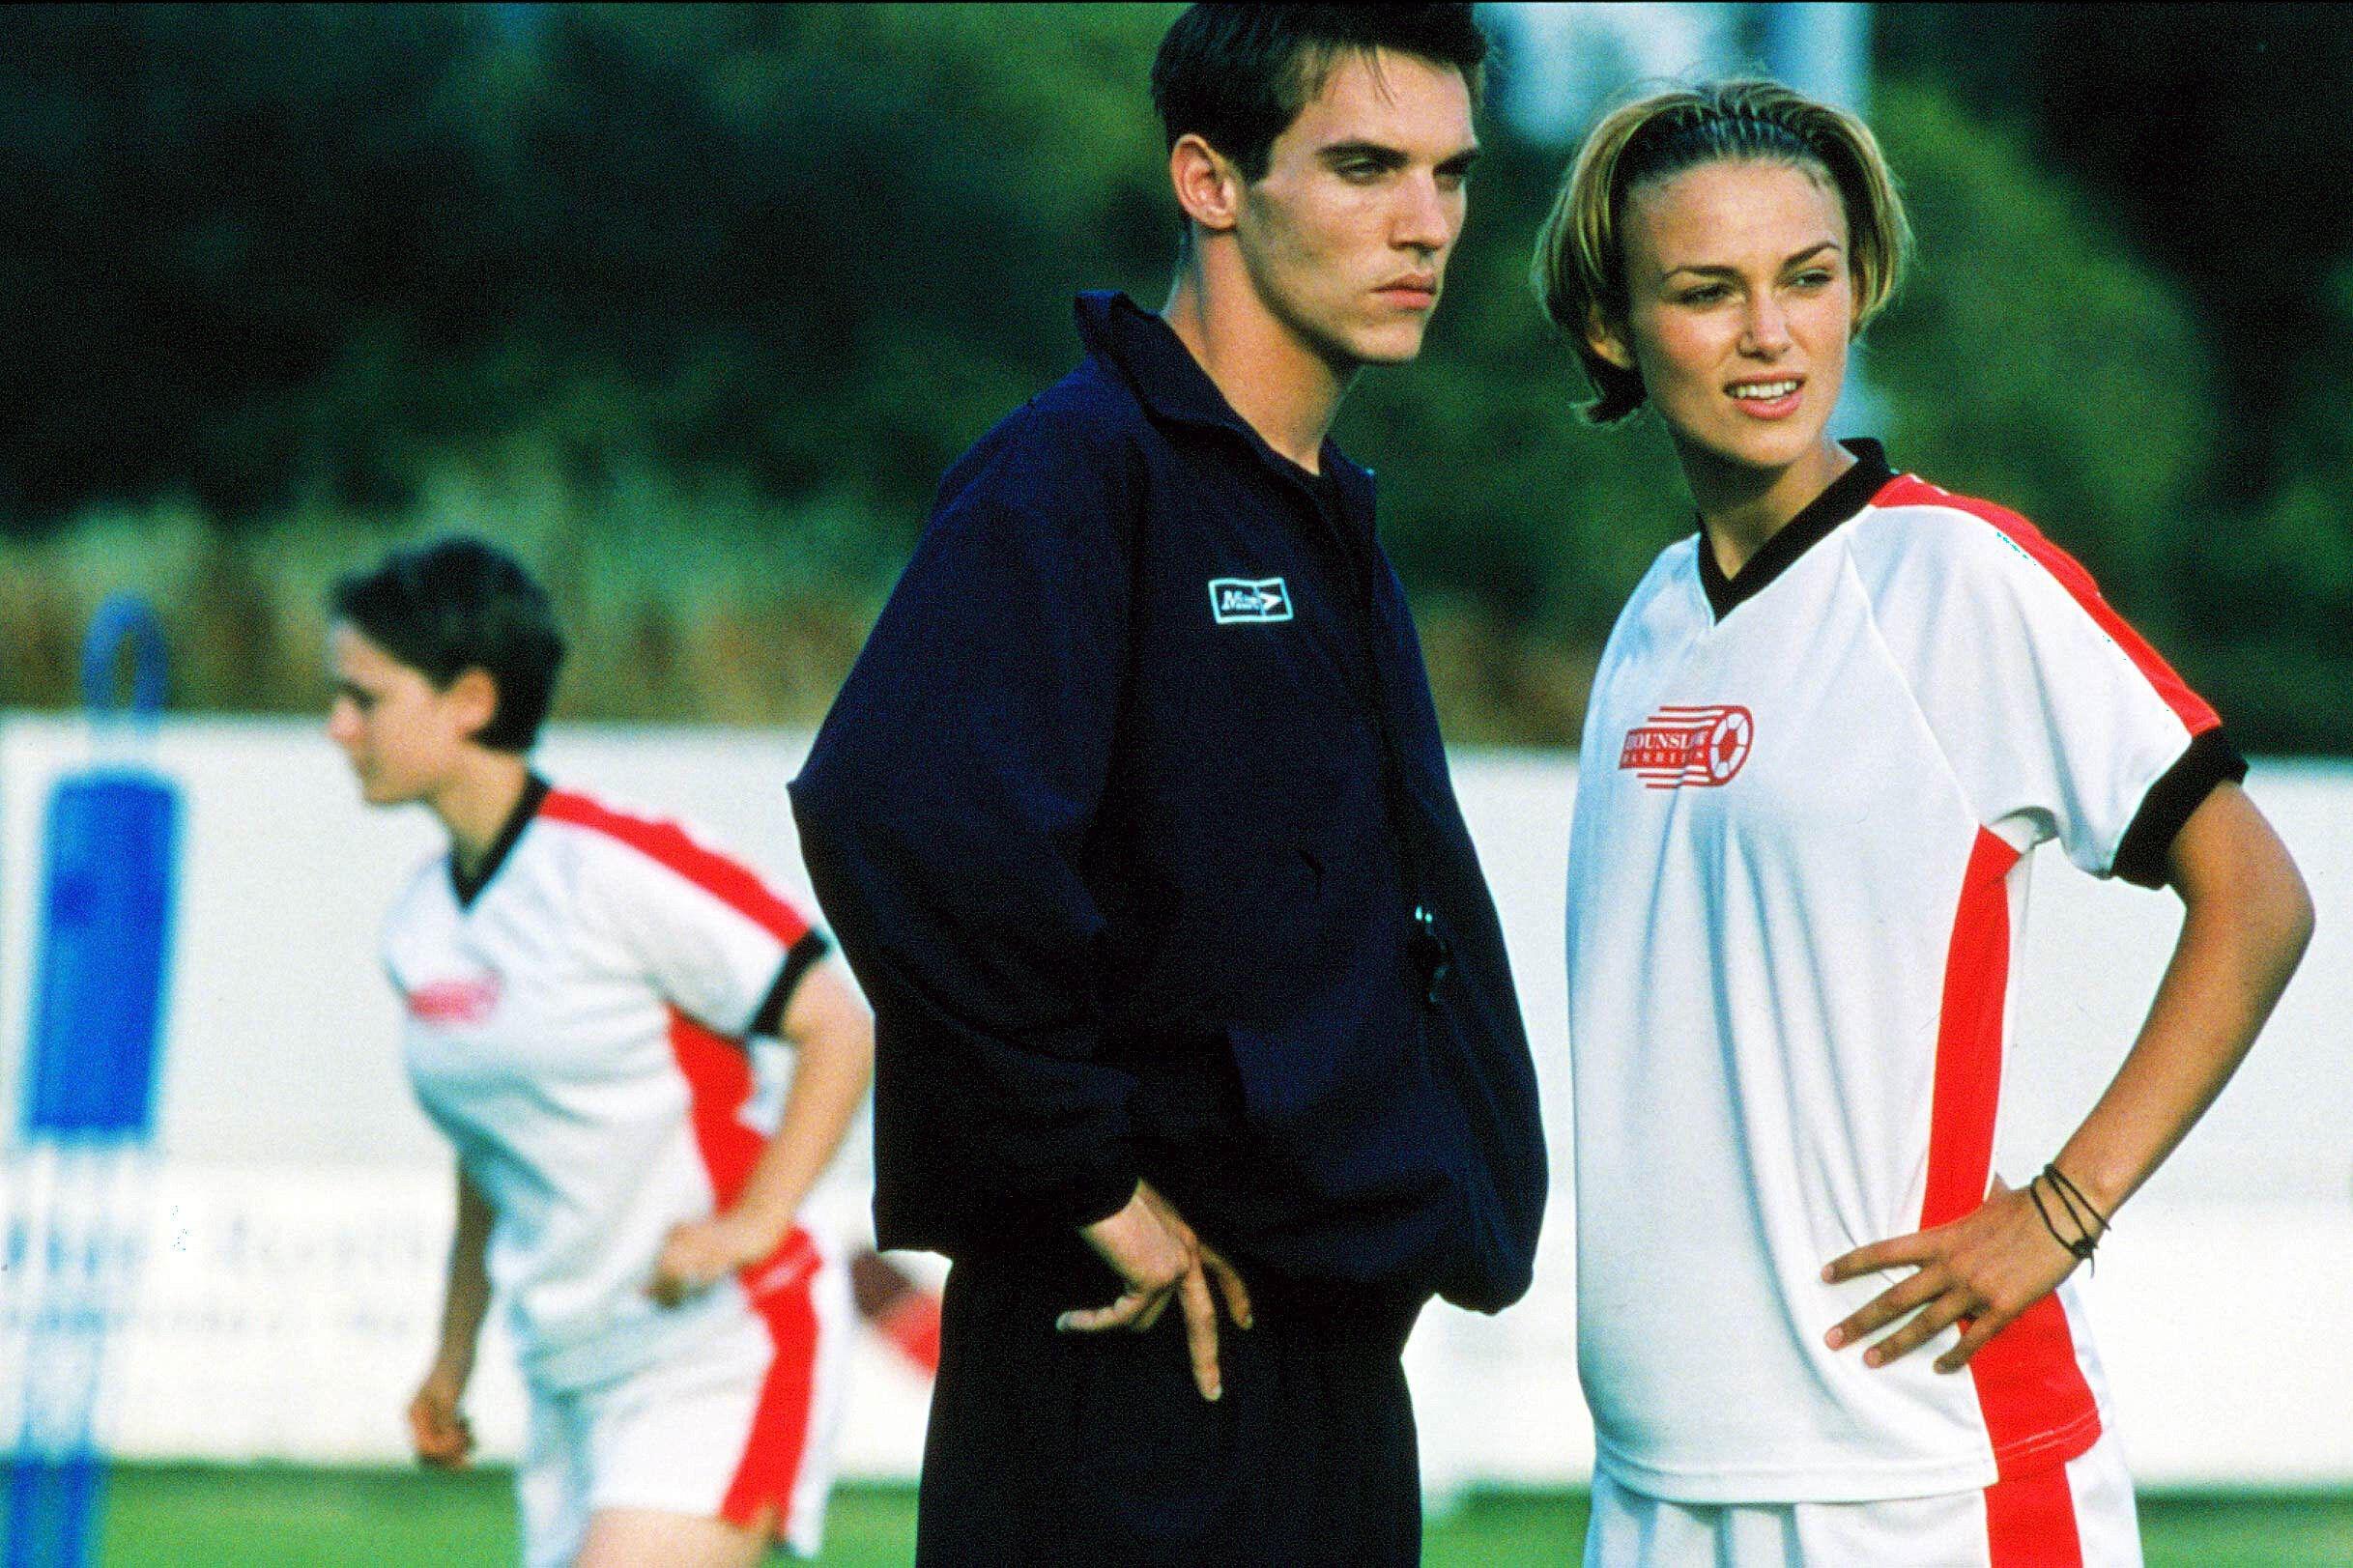 Keira im Film „Bend It Like Beckham“ aus dem Jahr 2002